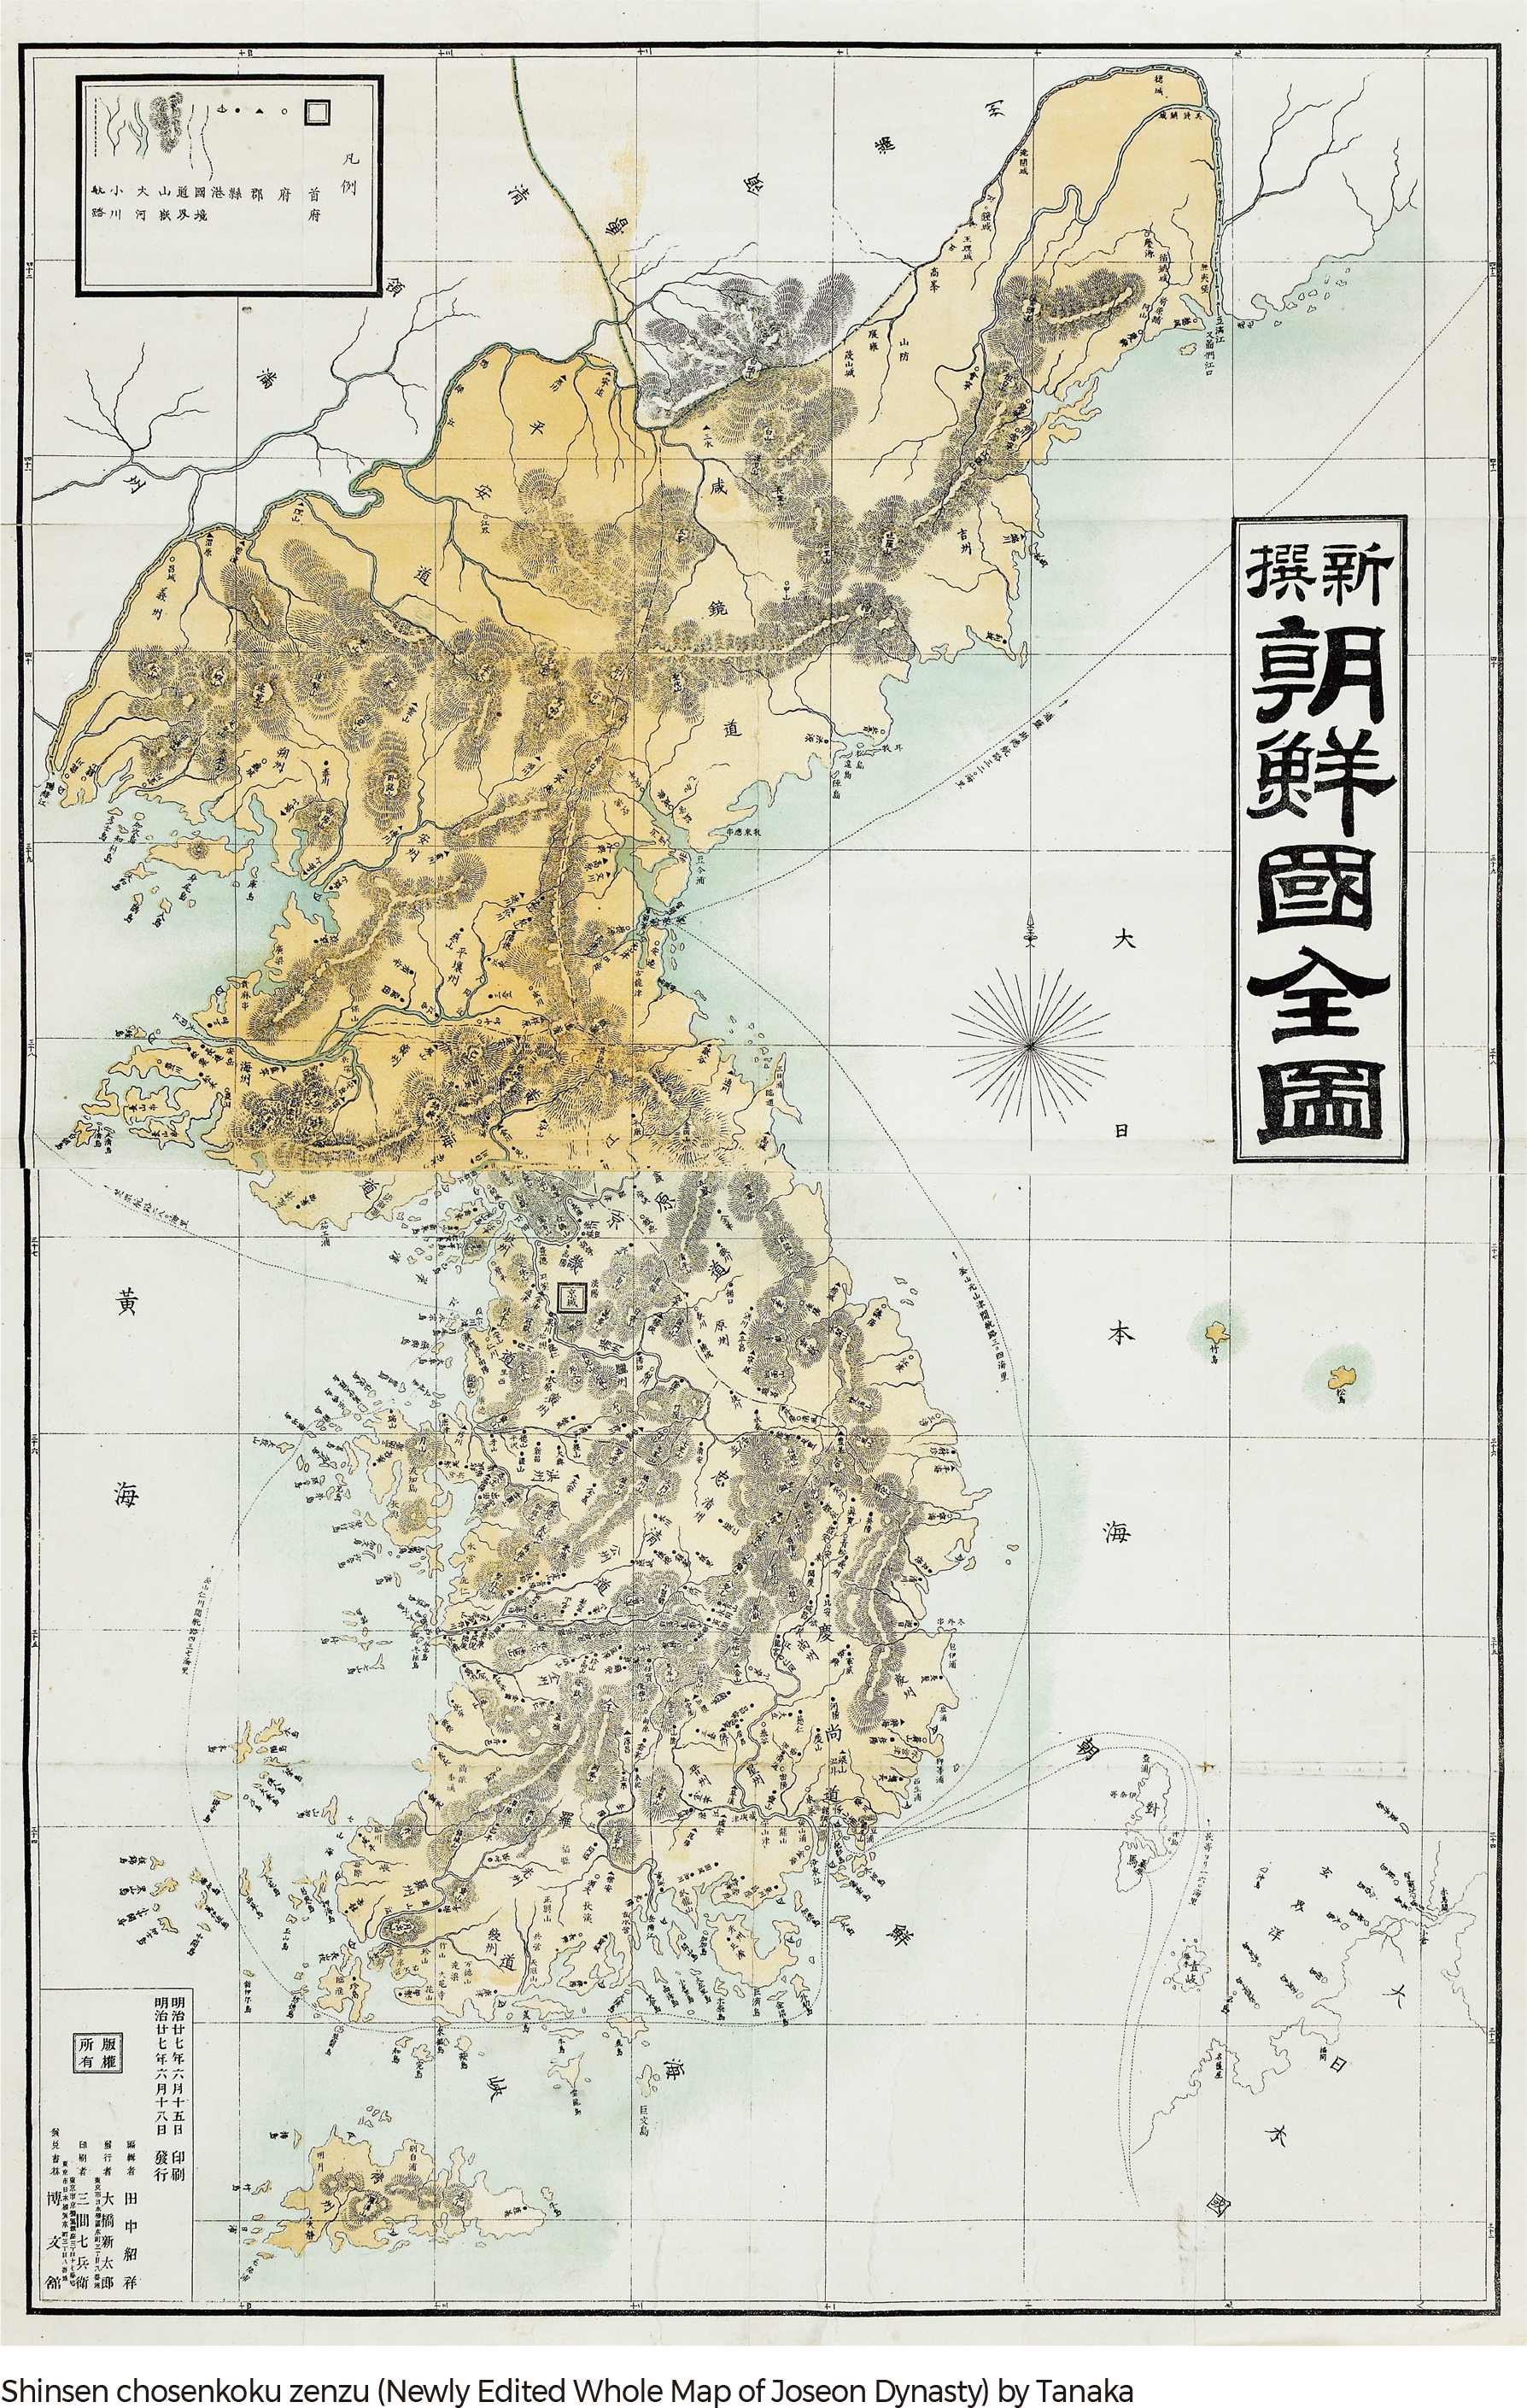 Shinsen chosenkoku zenzu (Newly Edited Whole Map of Joseon Dynasty) by Tanaka